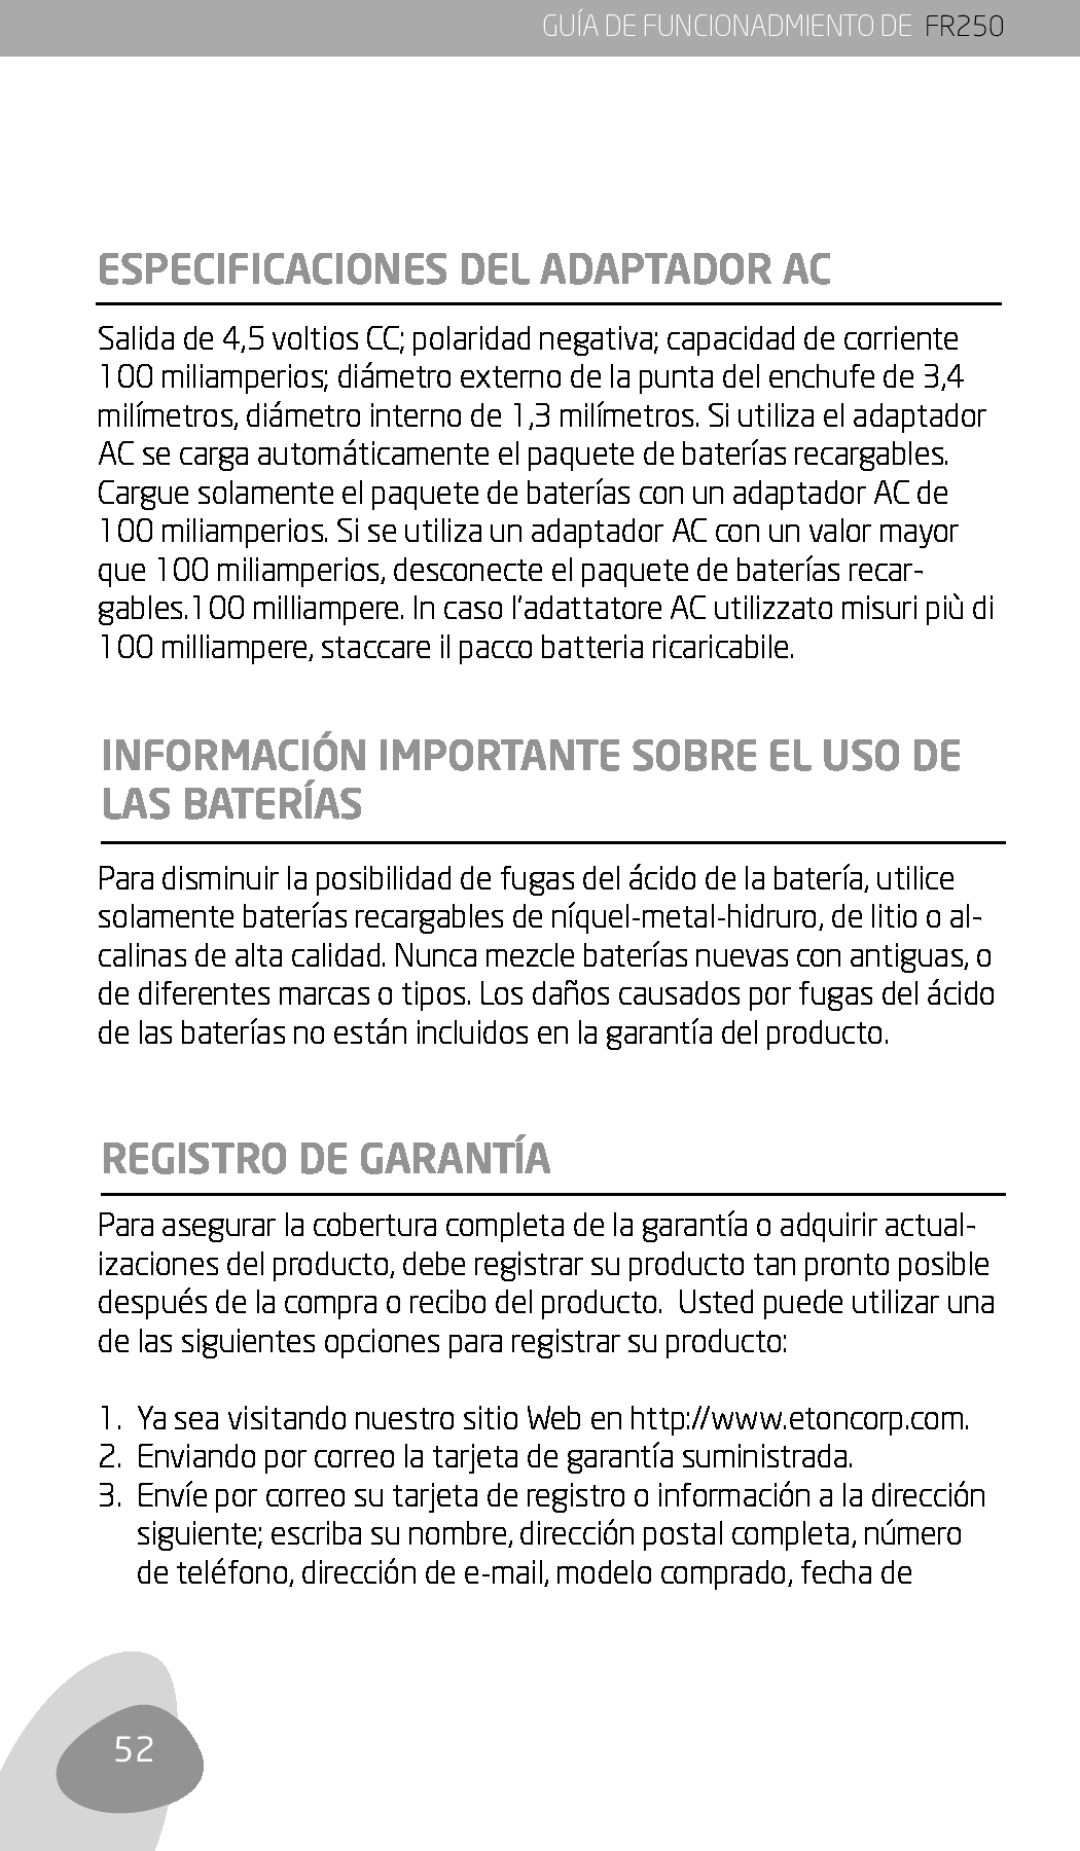 Eton owner manual Especificaciones Del Adaptador Ac, Registro De Garantía, GUÍA DE FUNCIONADMIENTO DE FR250 